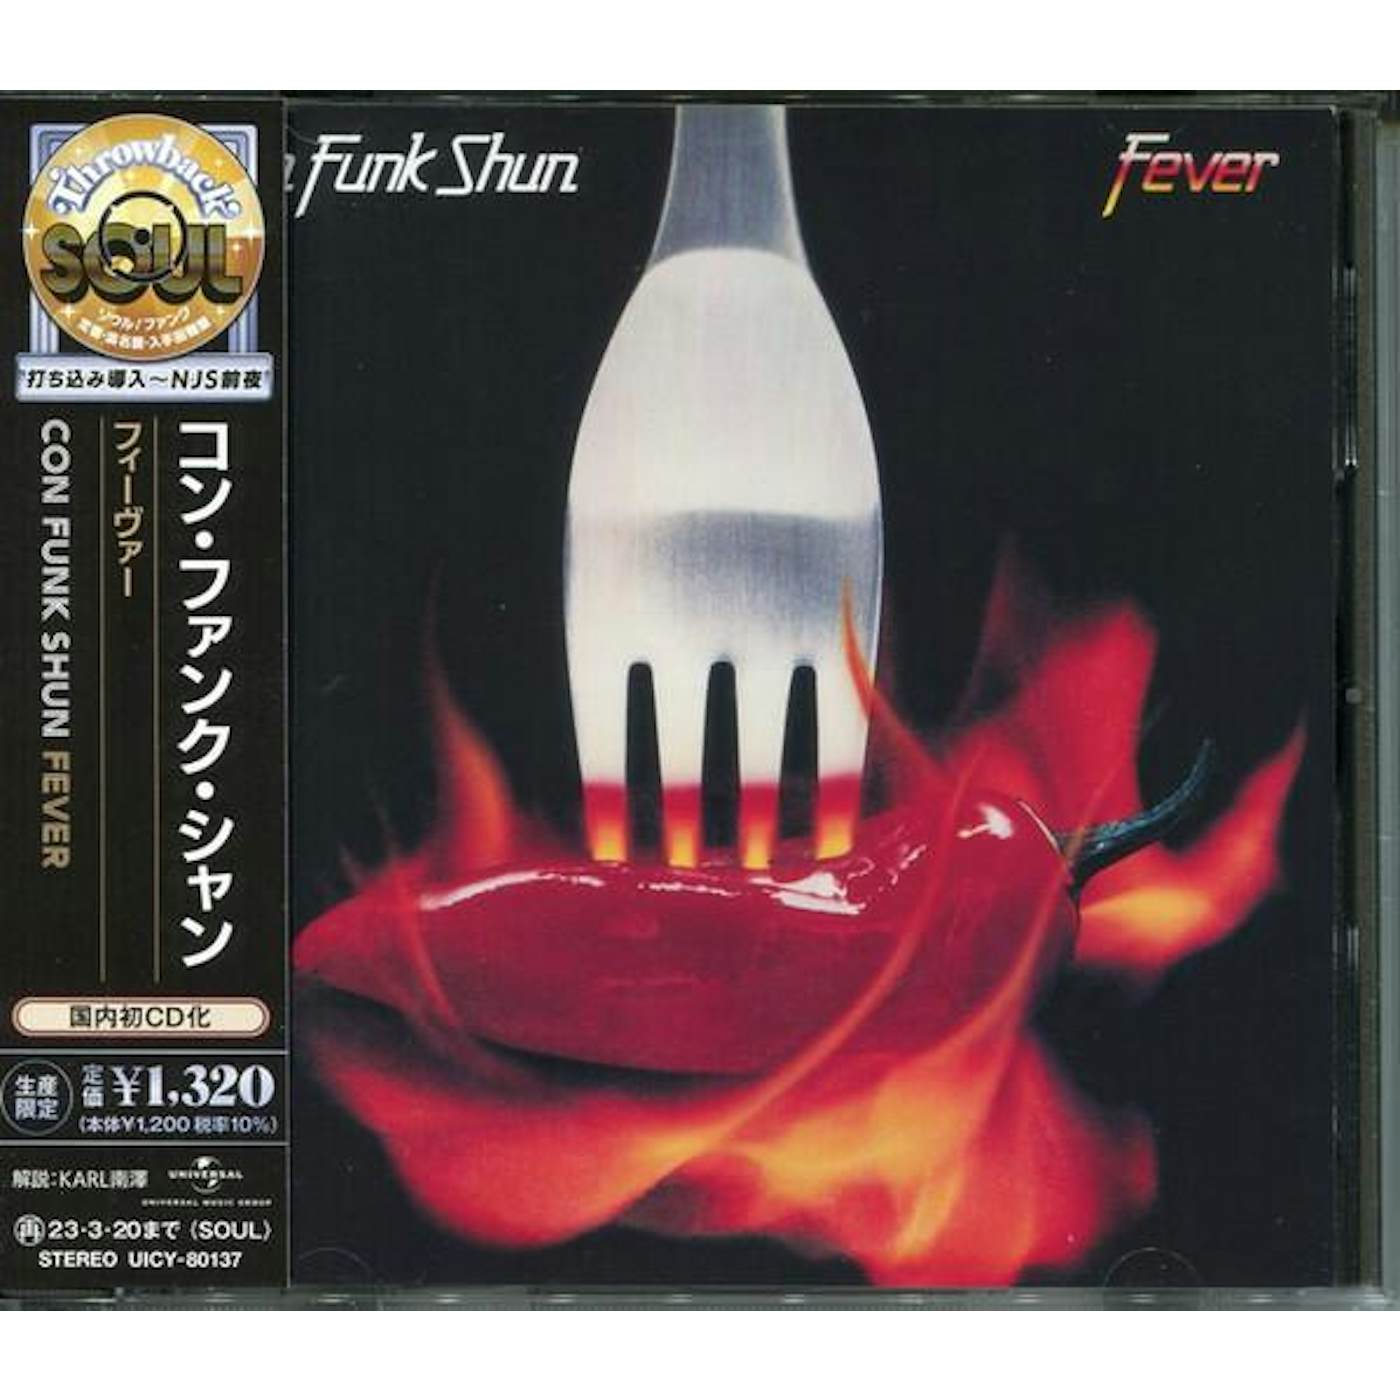 Con Funk Shun FEVER (LIMITED) CD